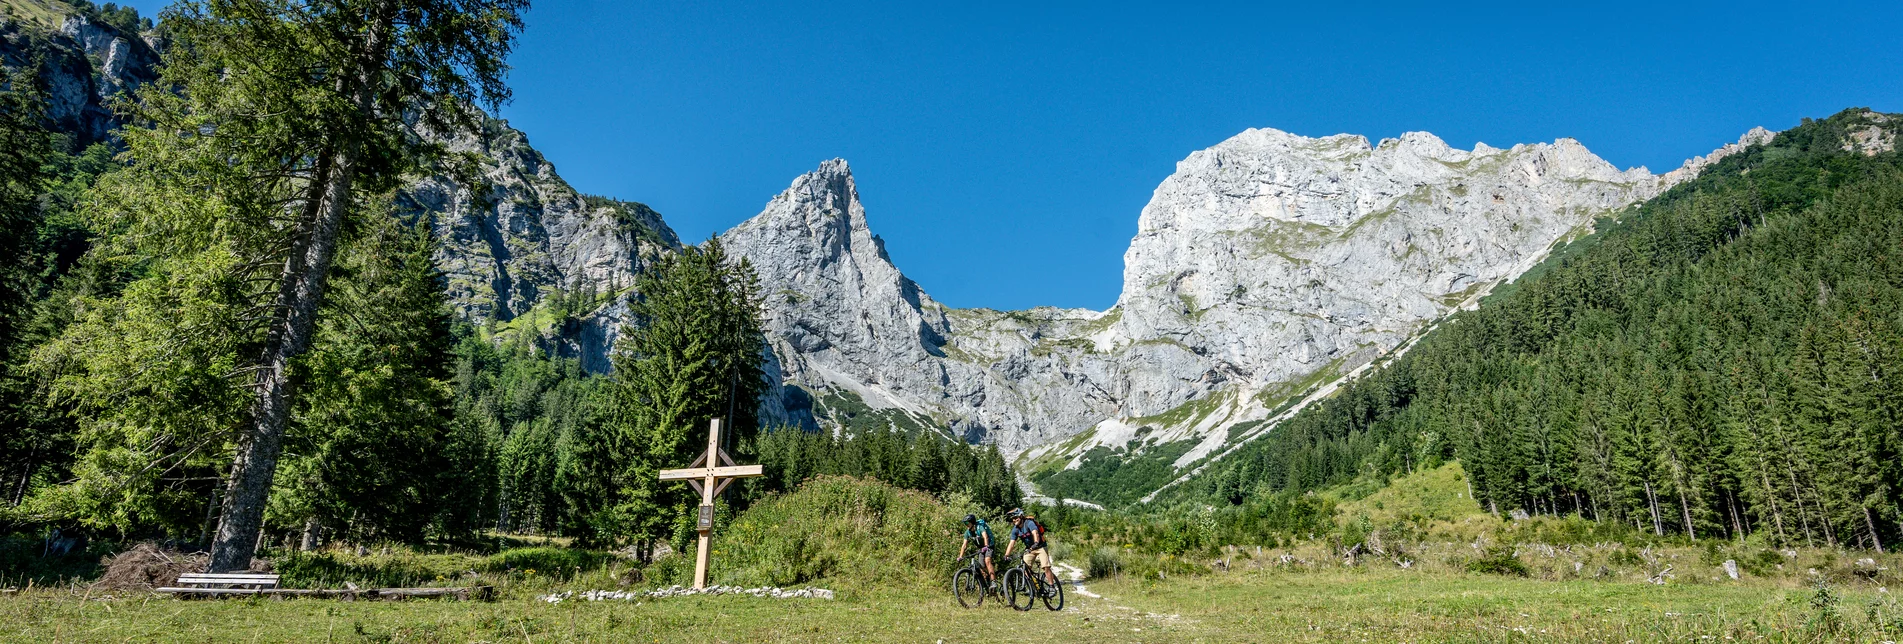 Mountain biking in the Eisenerz Ramsau | © STG | Jesse Streibl